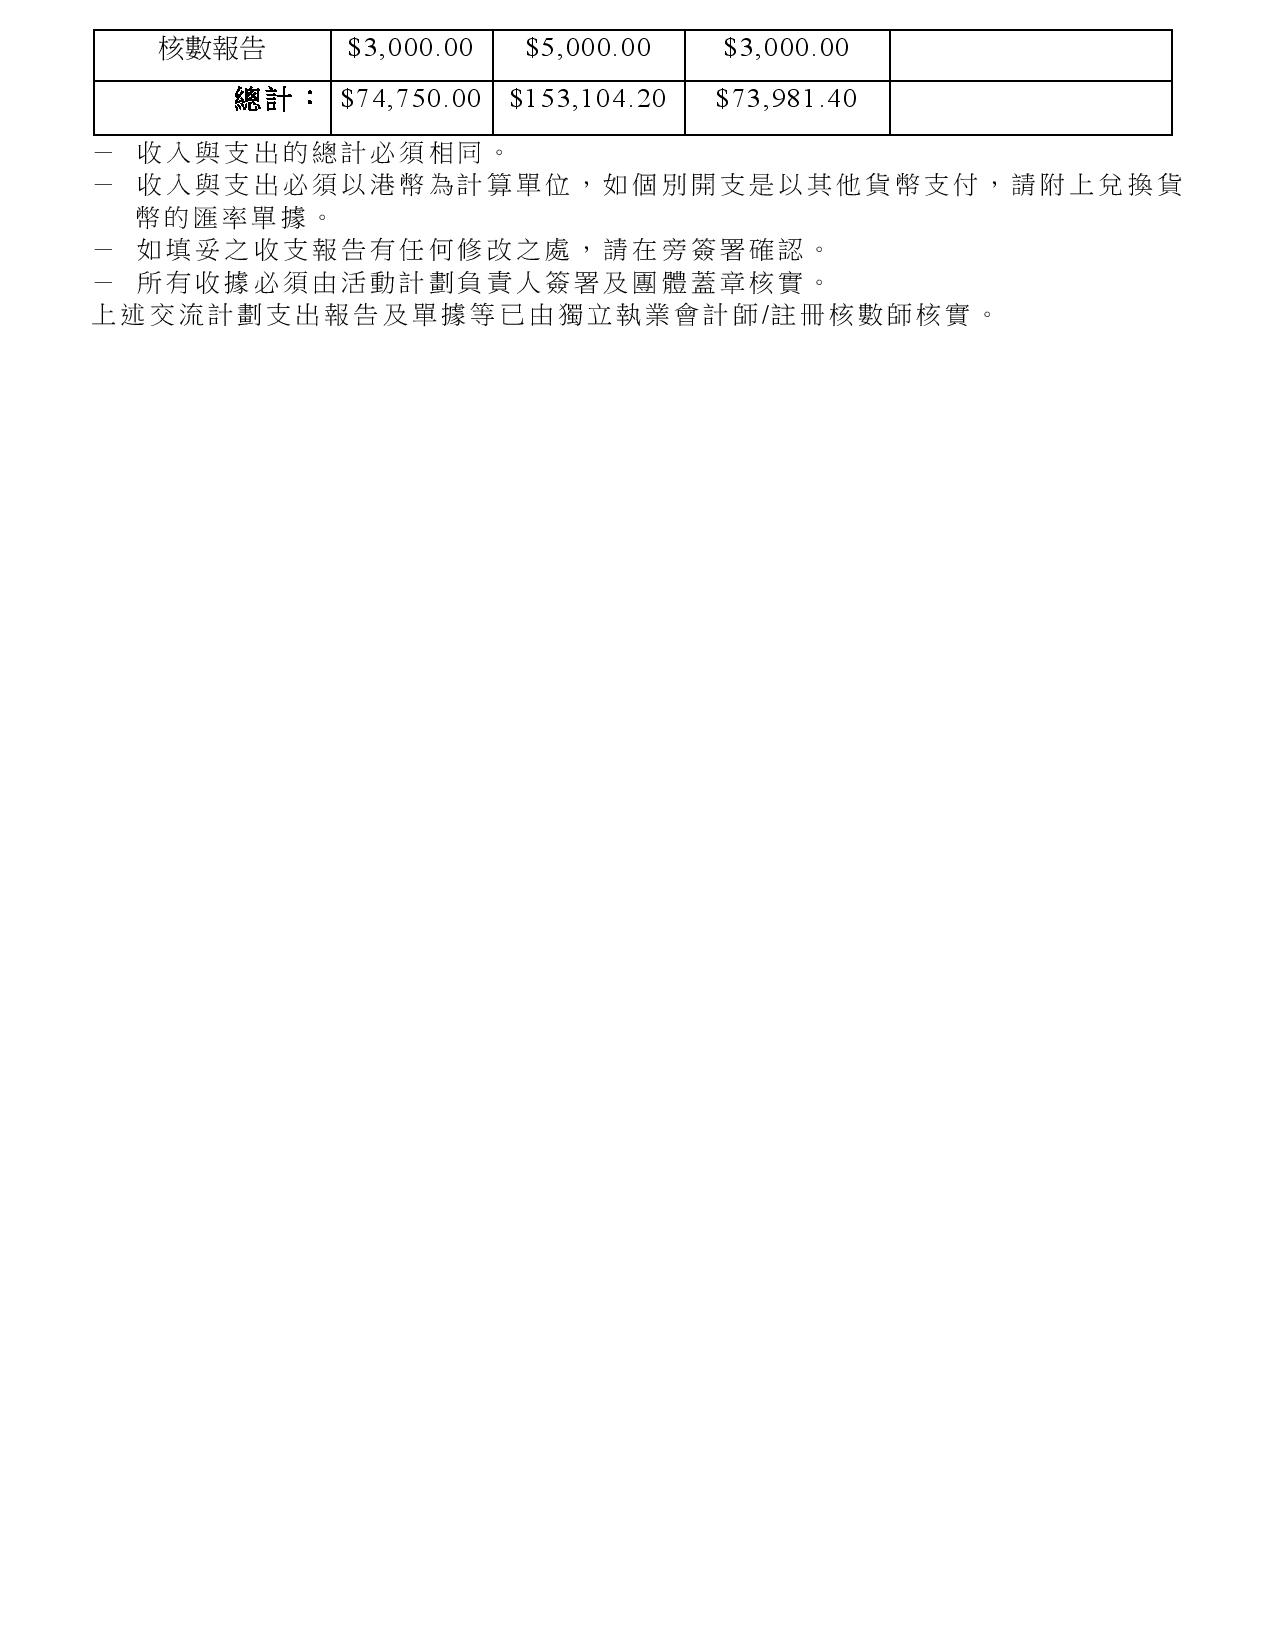 HKCFA_雲南團_附件八 - 收支報告-page-003(P.3).jpg